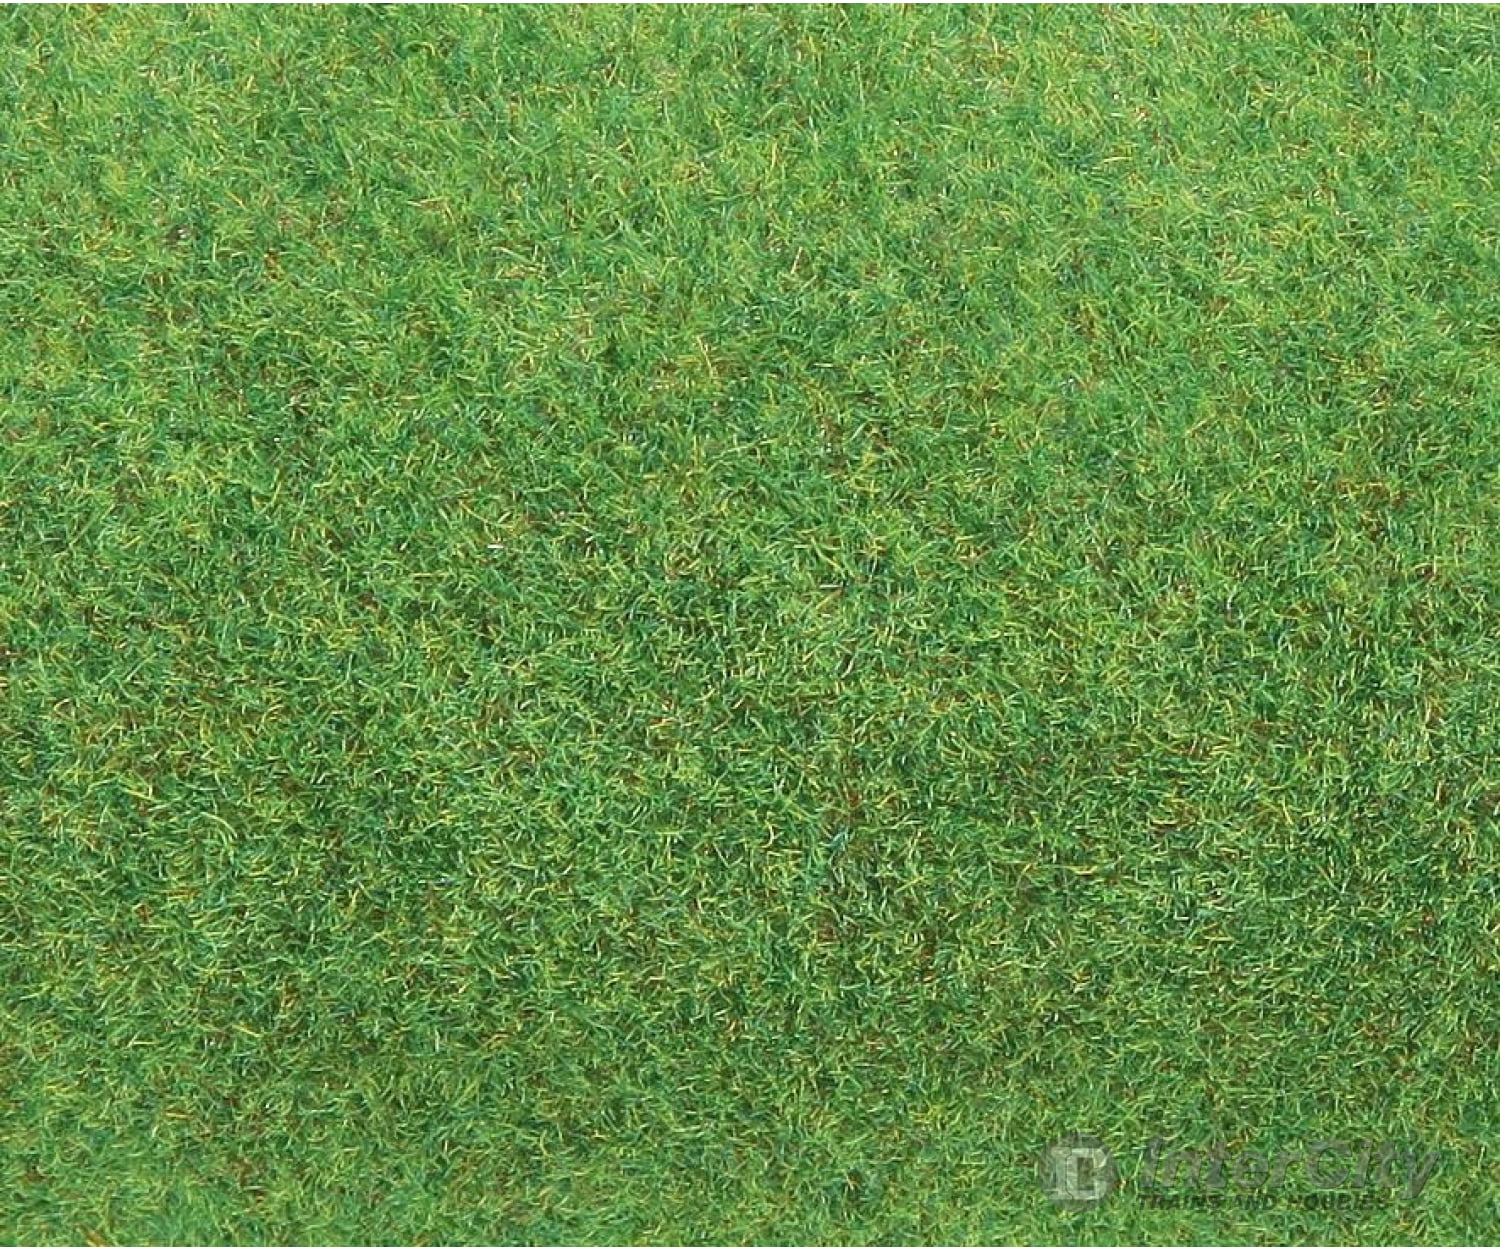 Faller 180755 Ho Tt N Z Ground Mat Light Green Grass & Scenery Mats